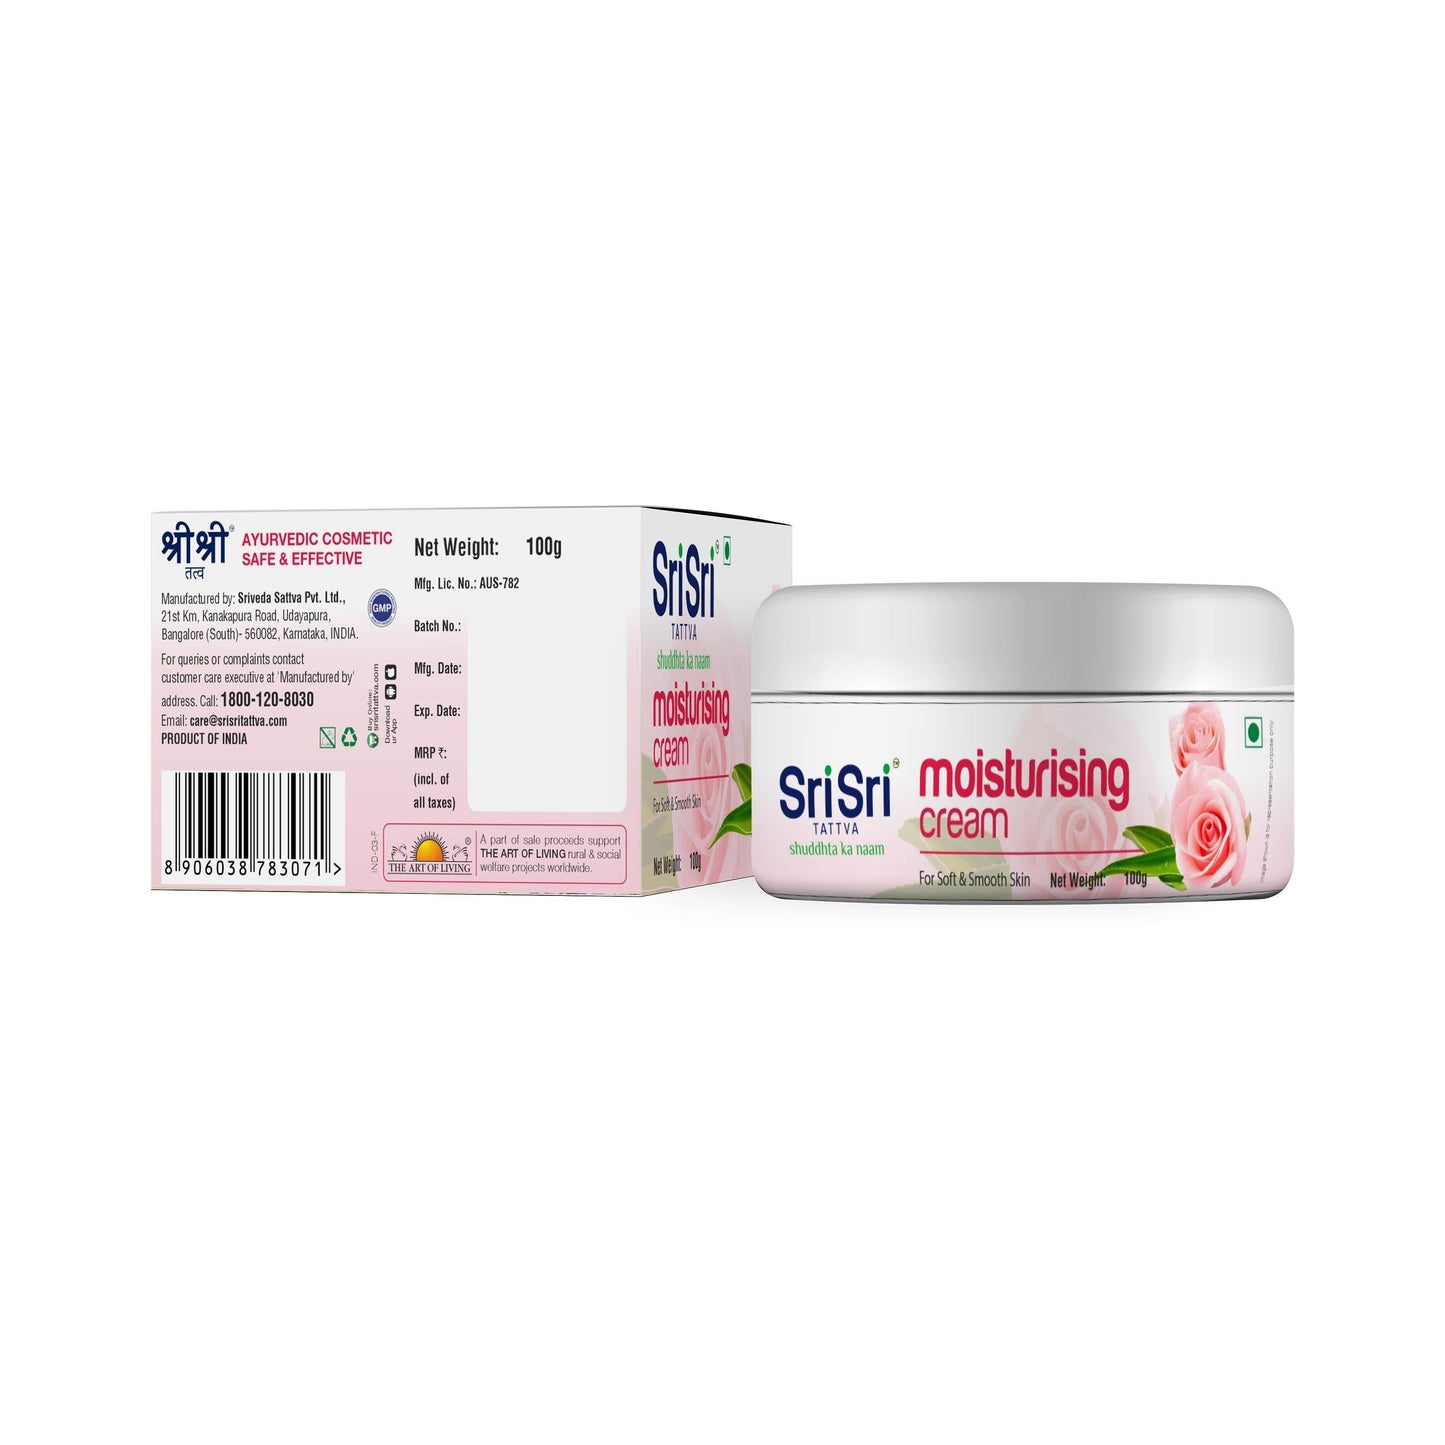 Moisturising Cream - For Soft & Smooth Skin, 100g - Sri Sri Tattva